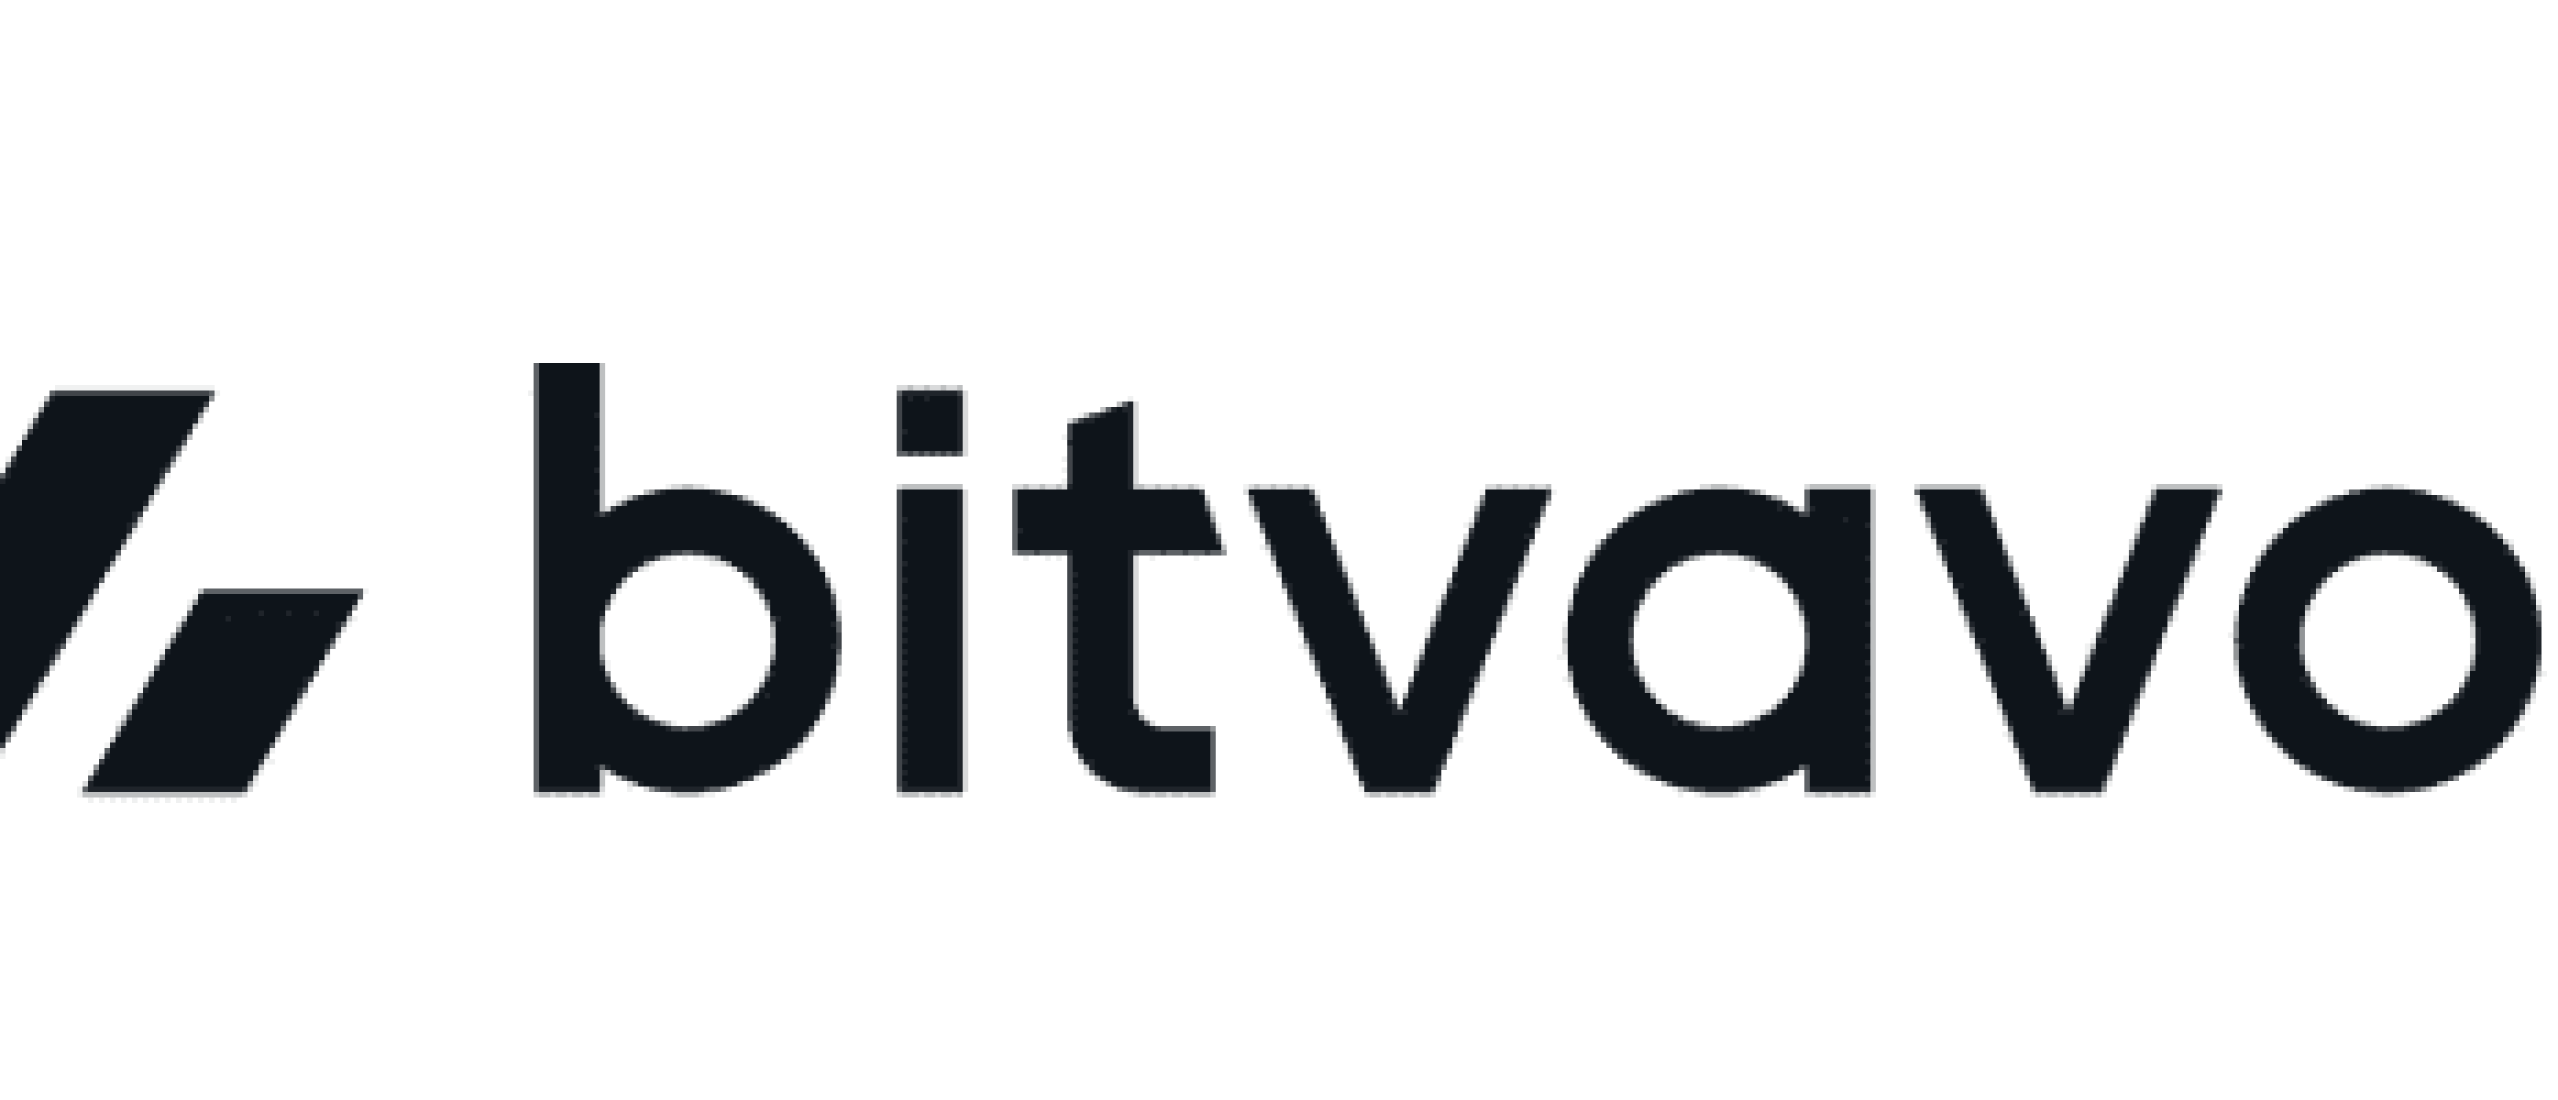 BITAVO - Bitcoins kopen - Hoe koop je bitcoins - Review & Ervaringen